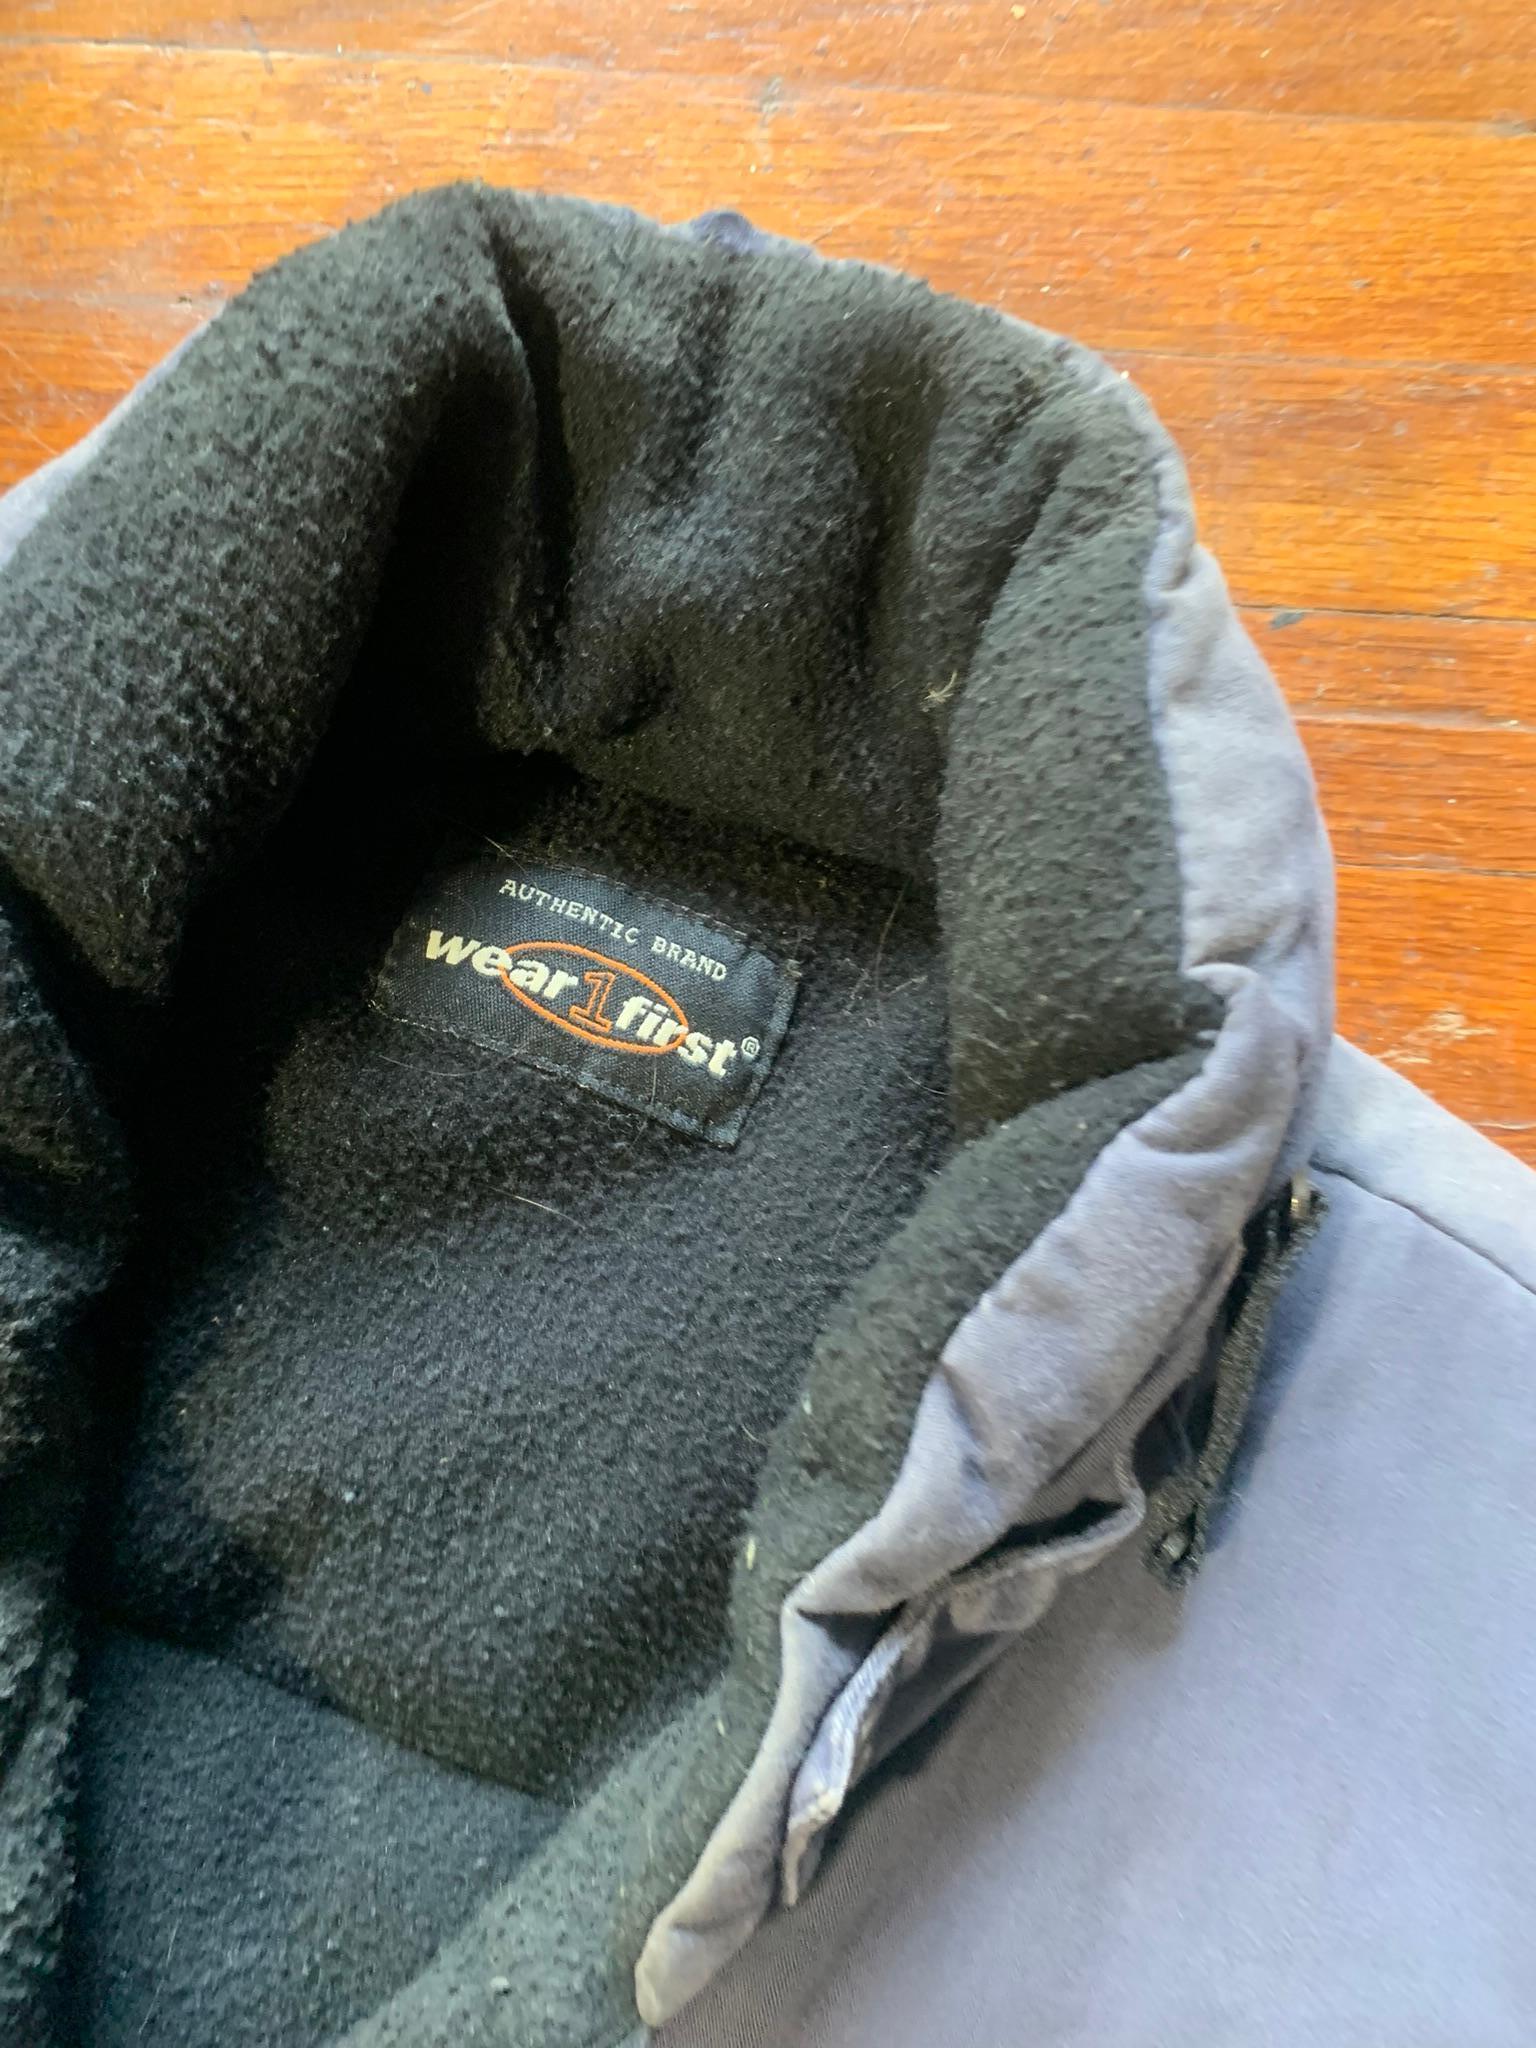 Vintage Wrangler Shirt, Eddie Bauer Vests, Coats, Park V Leather Jacket